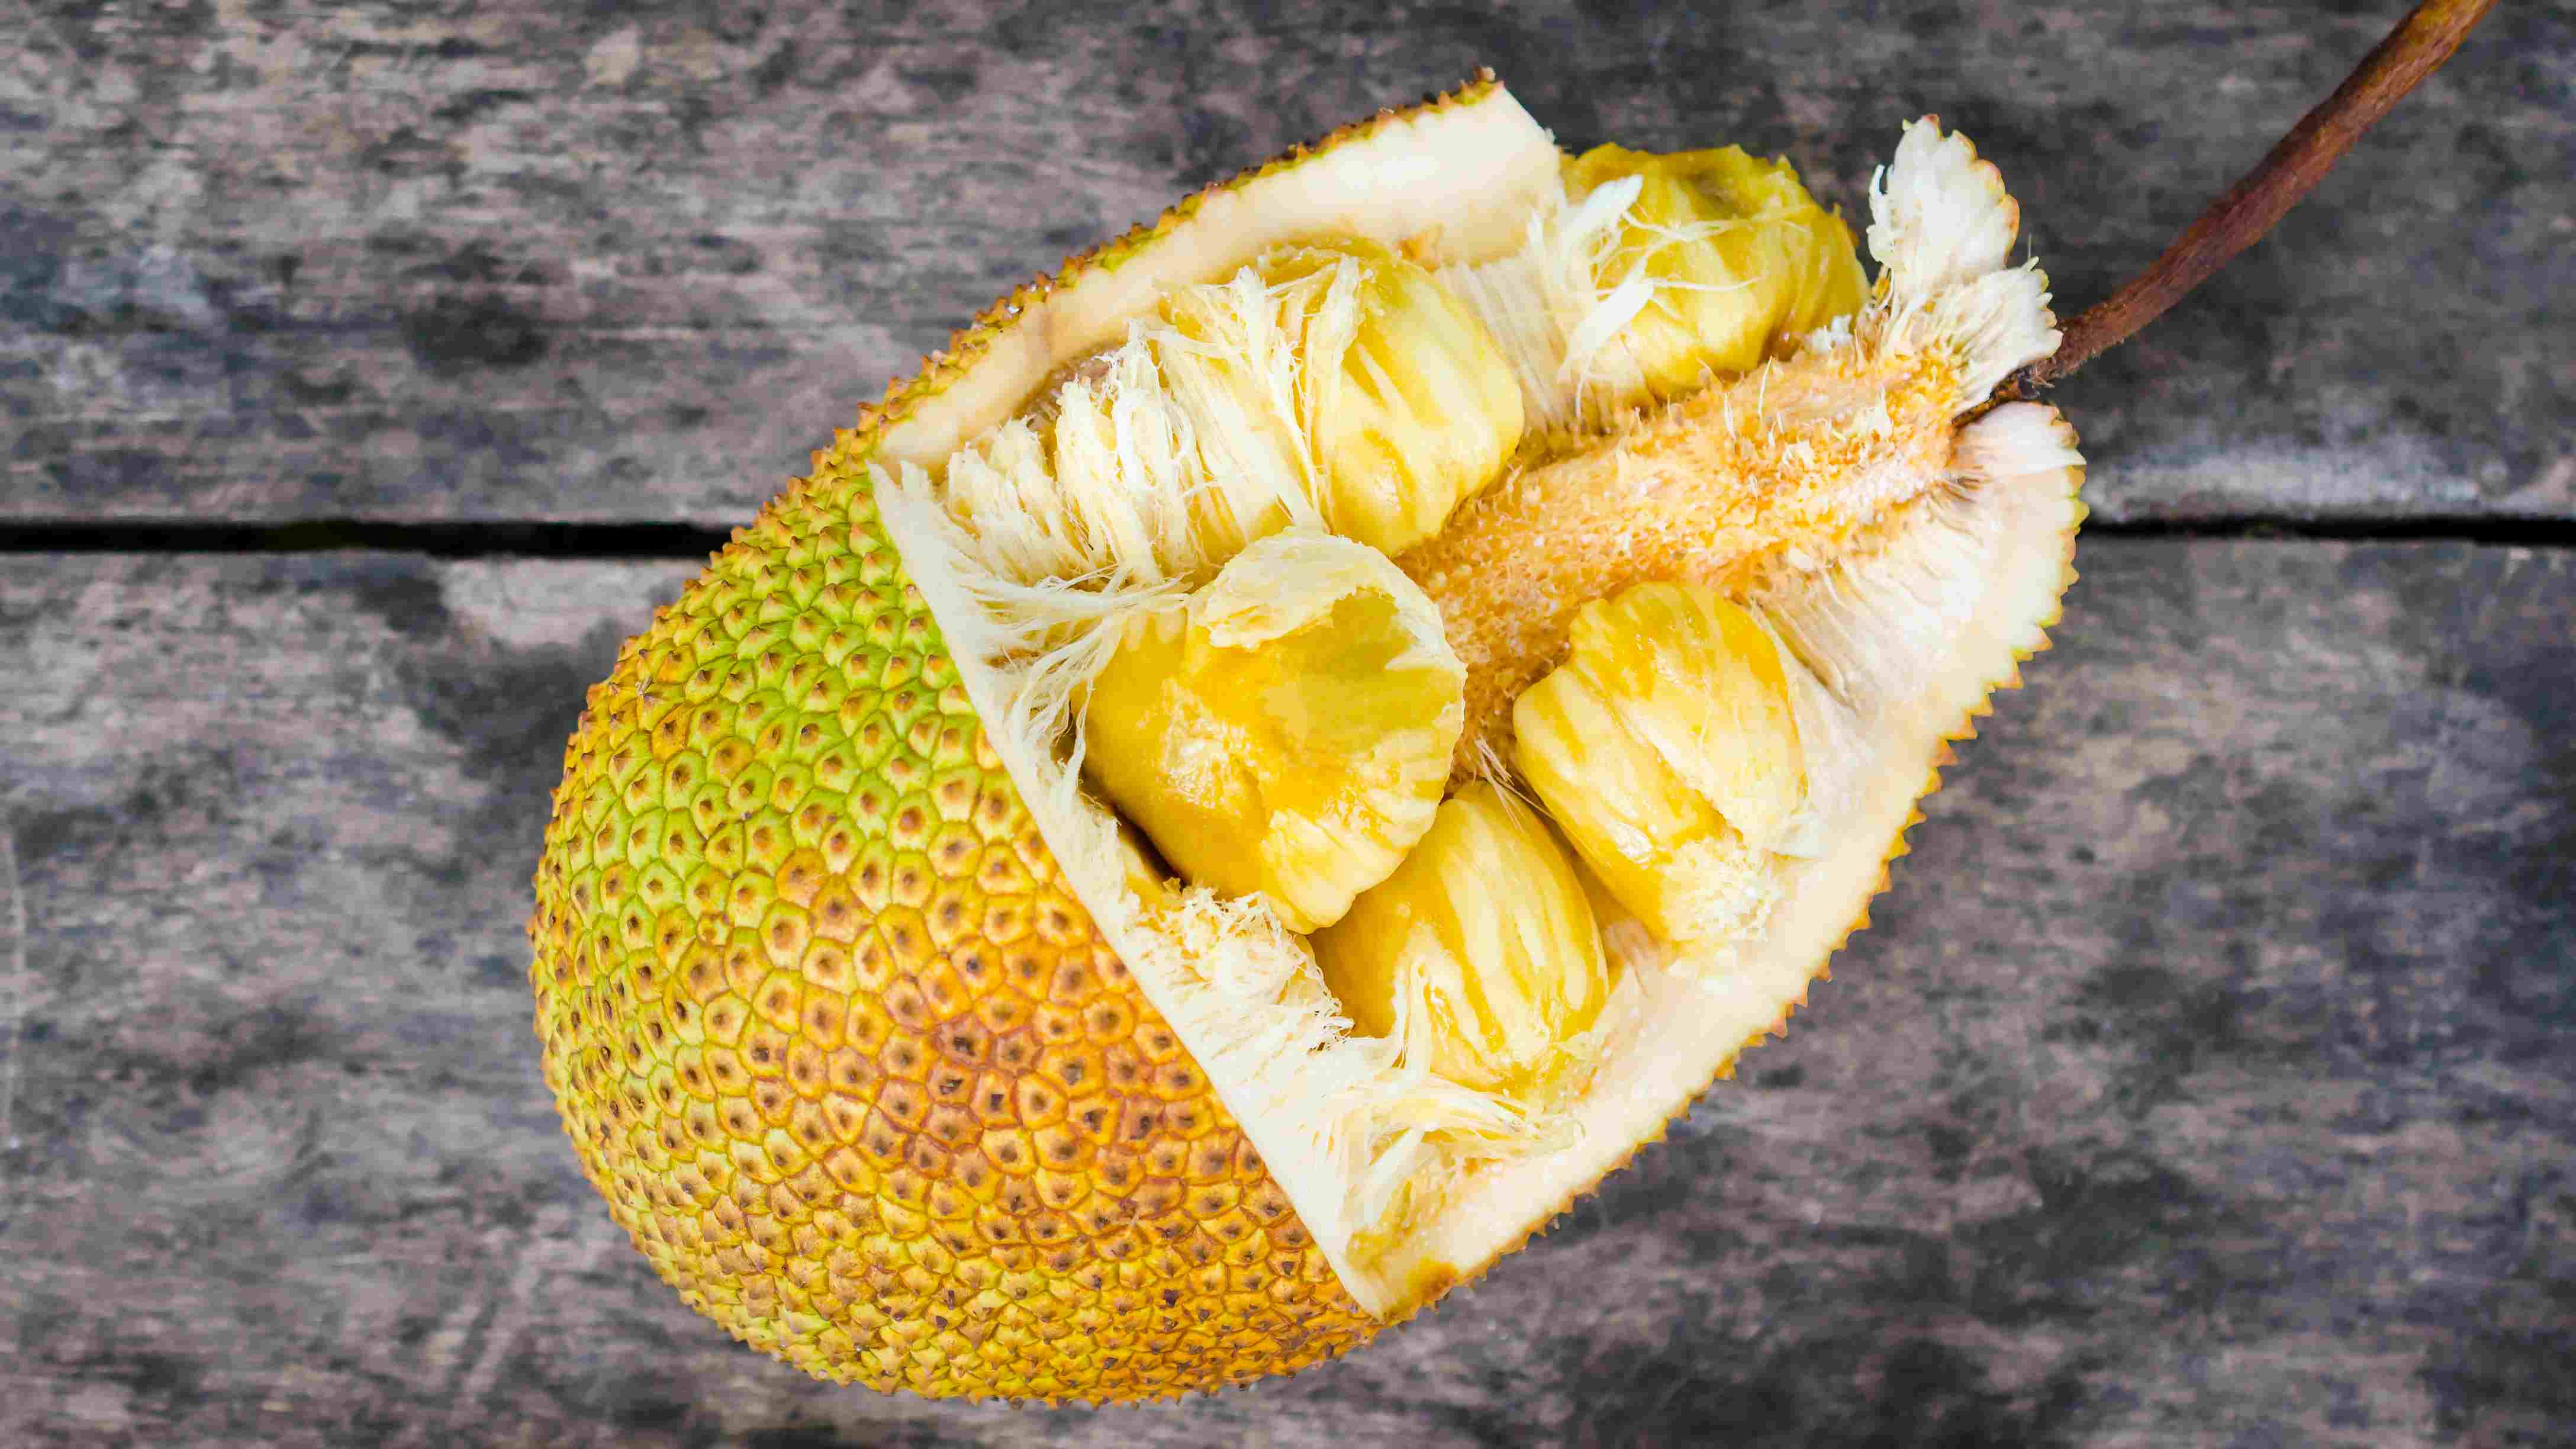 How To Cook Jackfruit Seeds